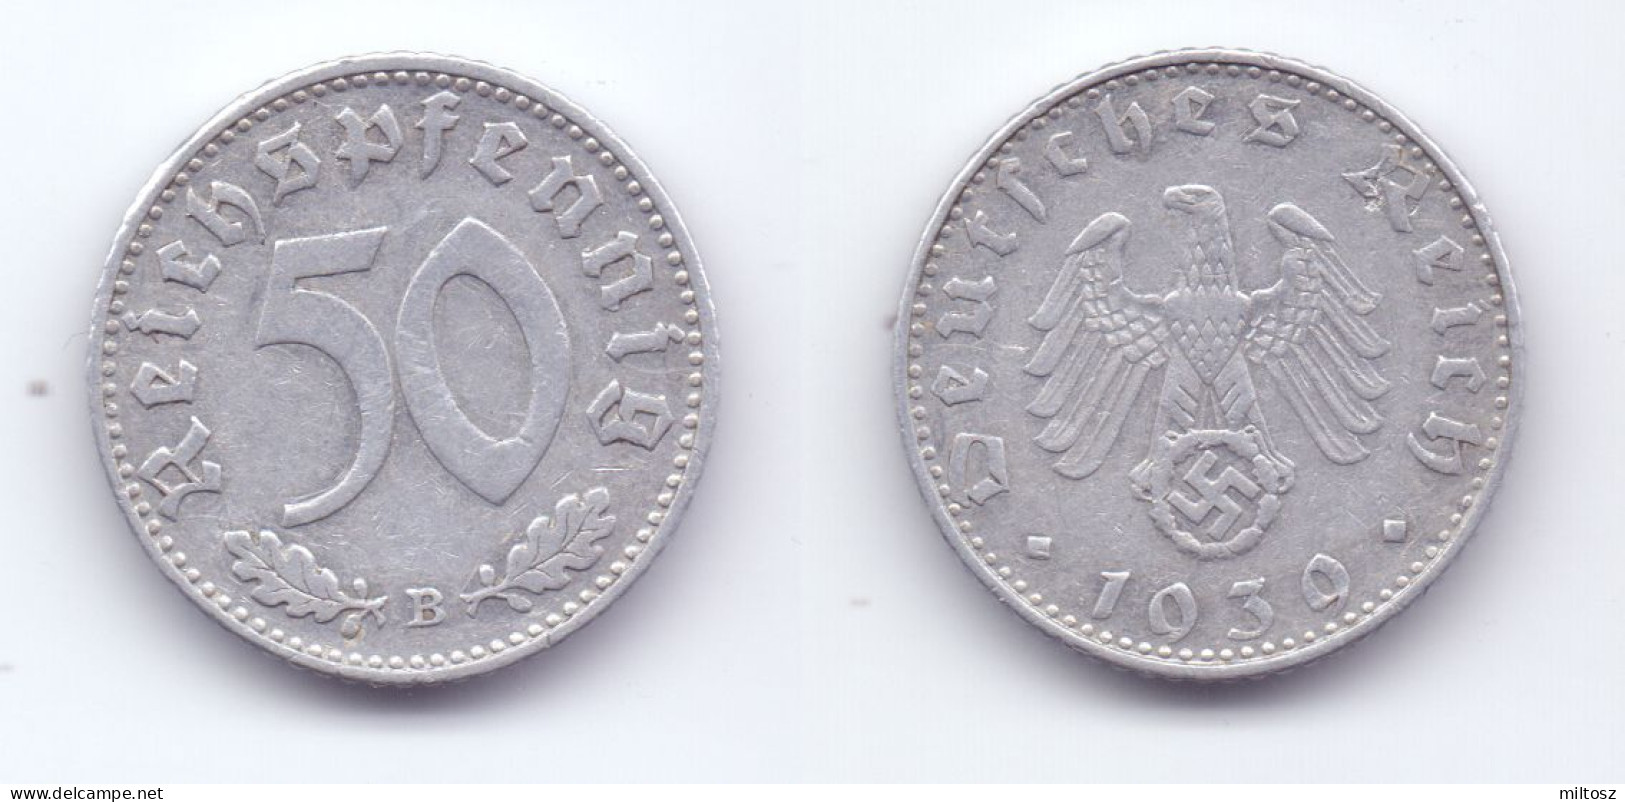 Germany 50 Reichspfennig 1939 B WWII Issue - 50 Reichspfennig